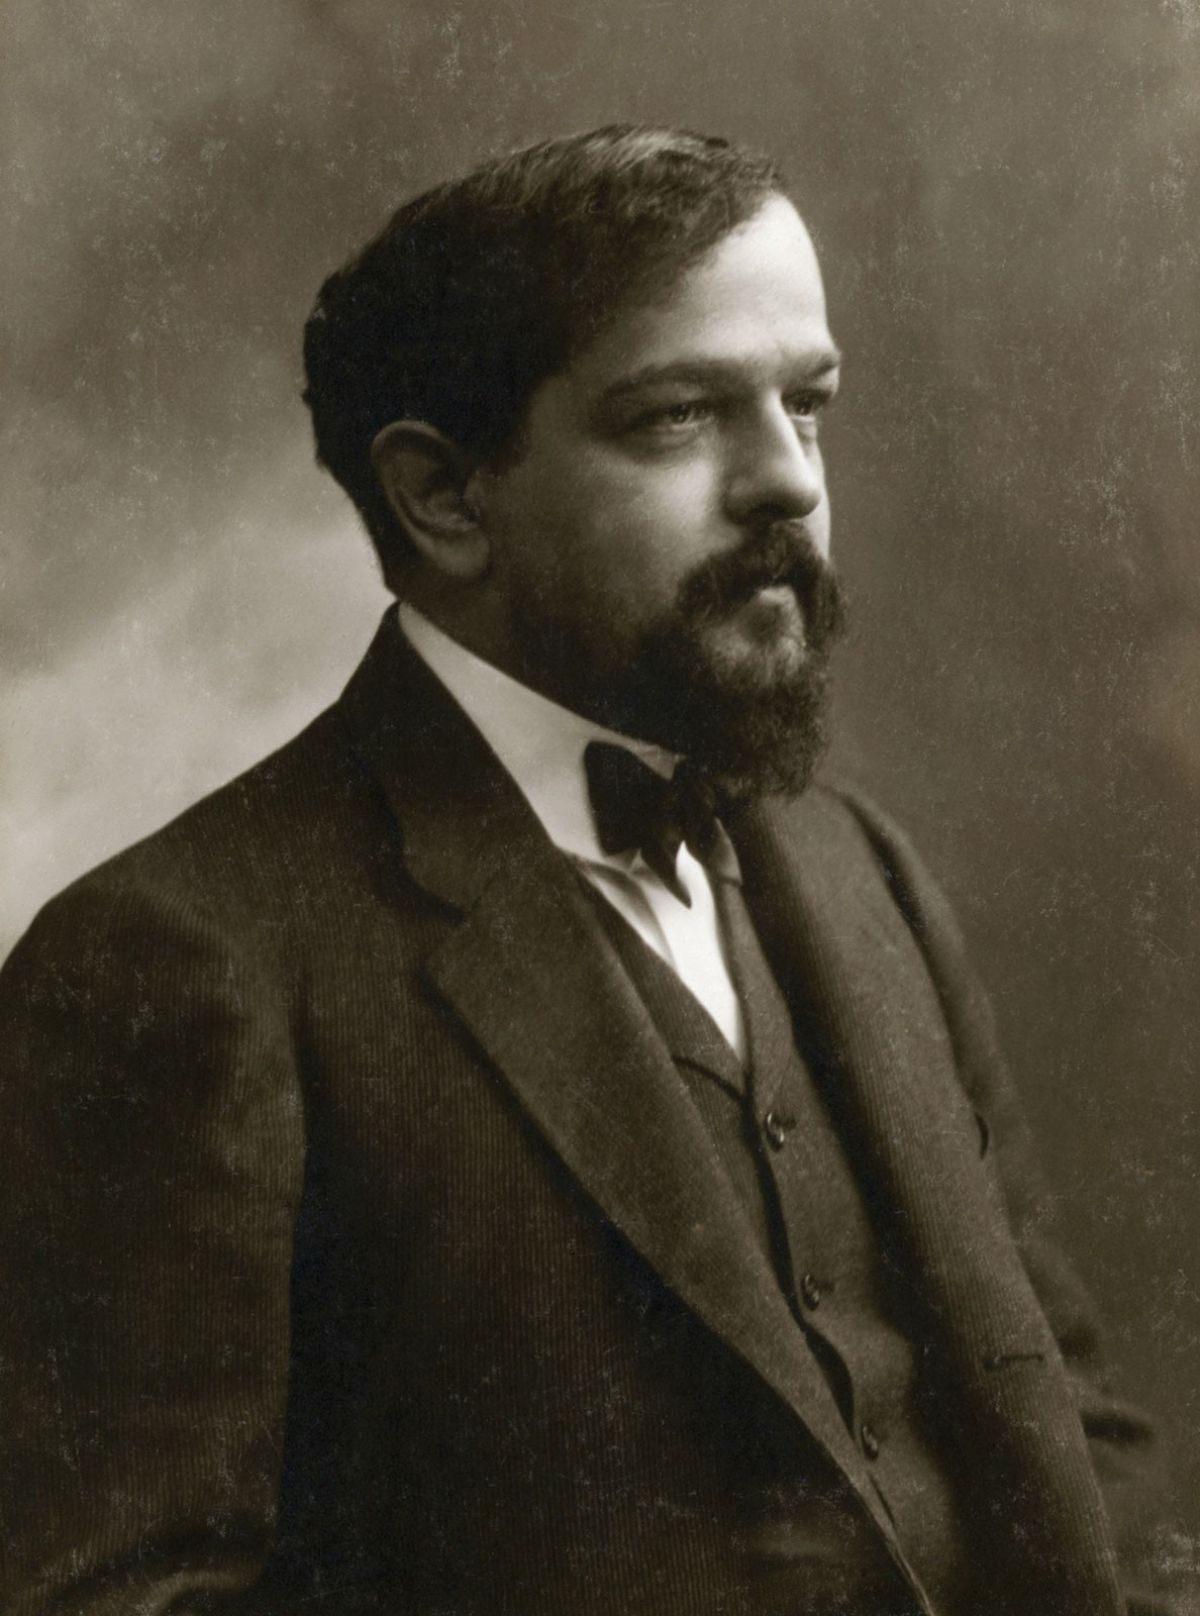 Claude_Debussy_ca_1908